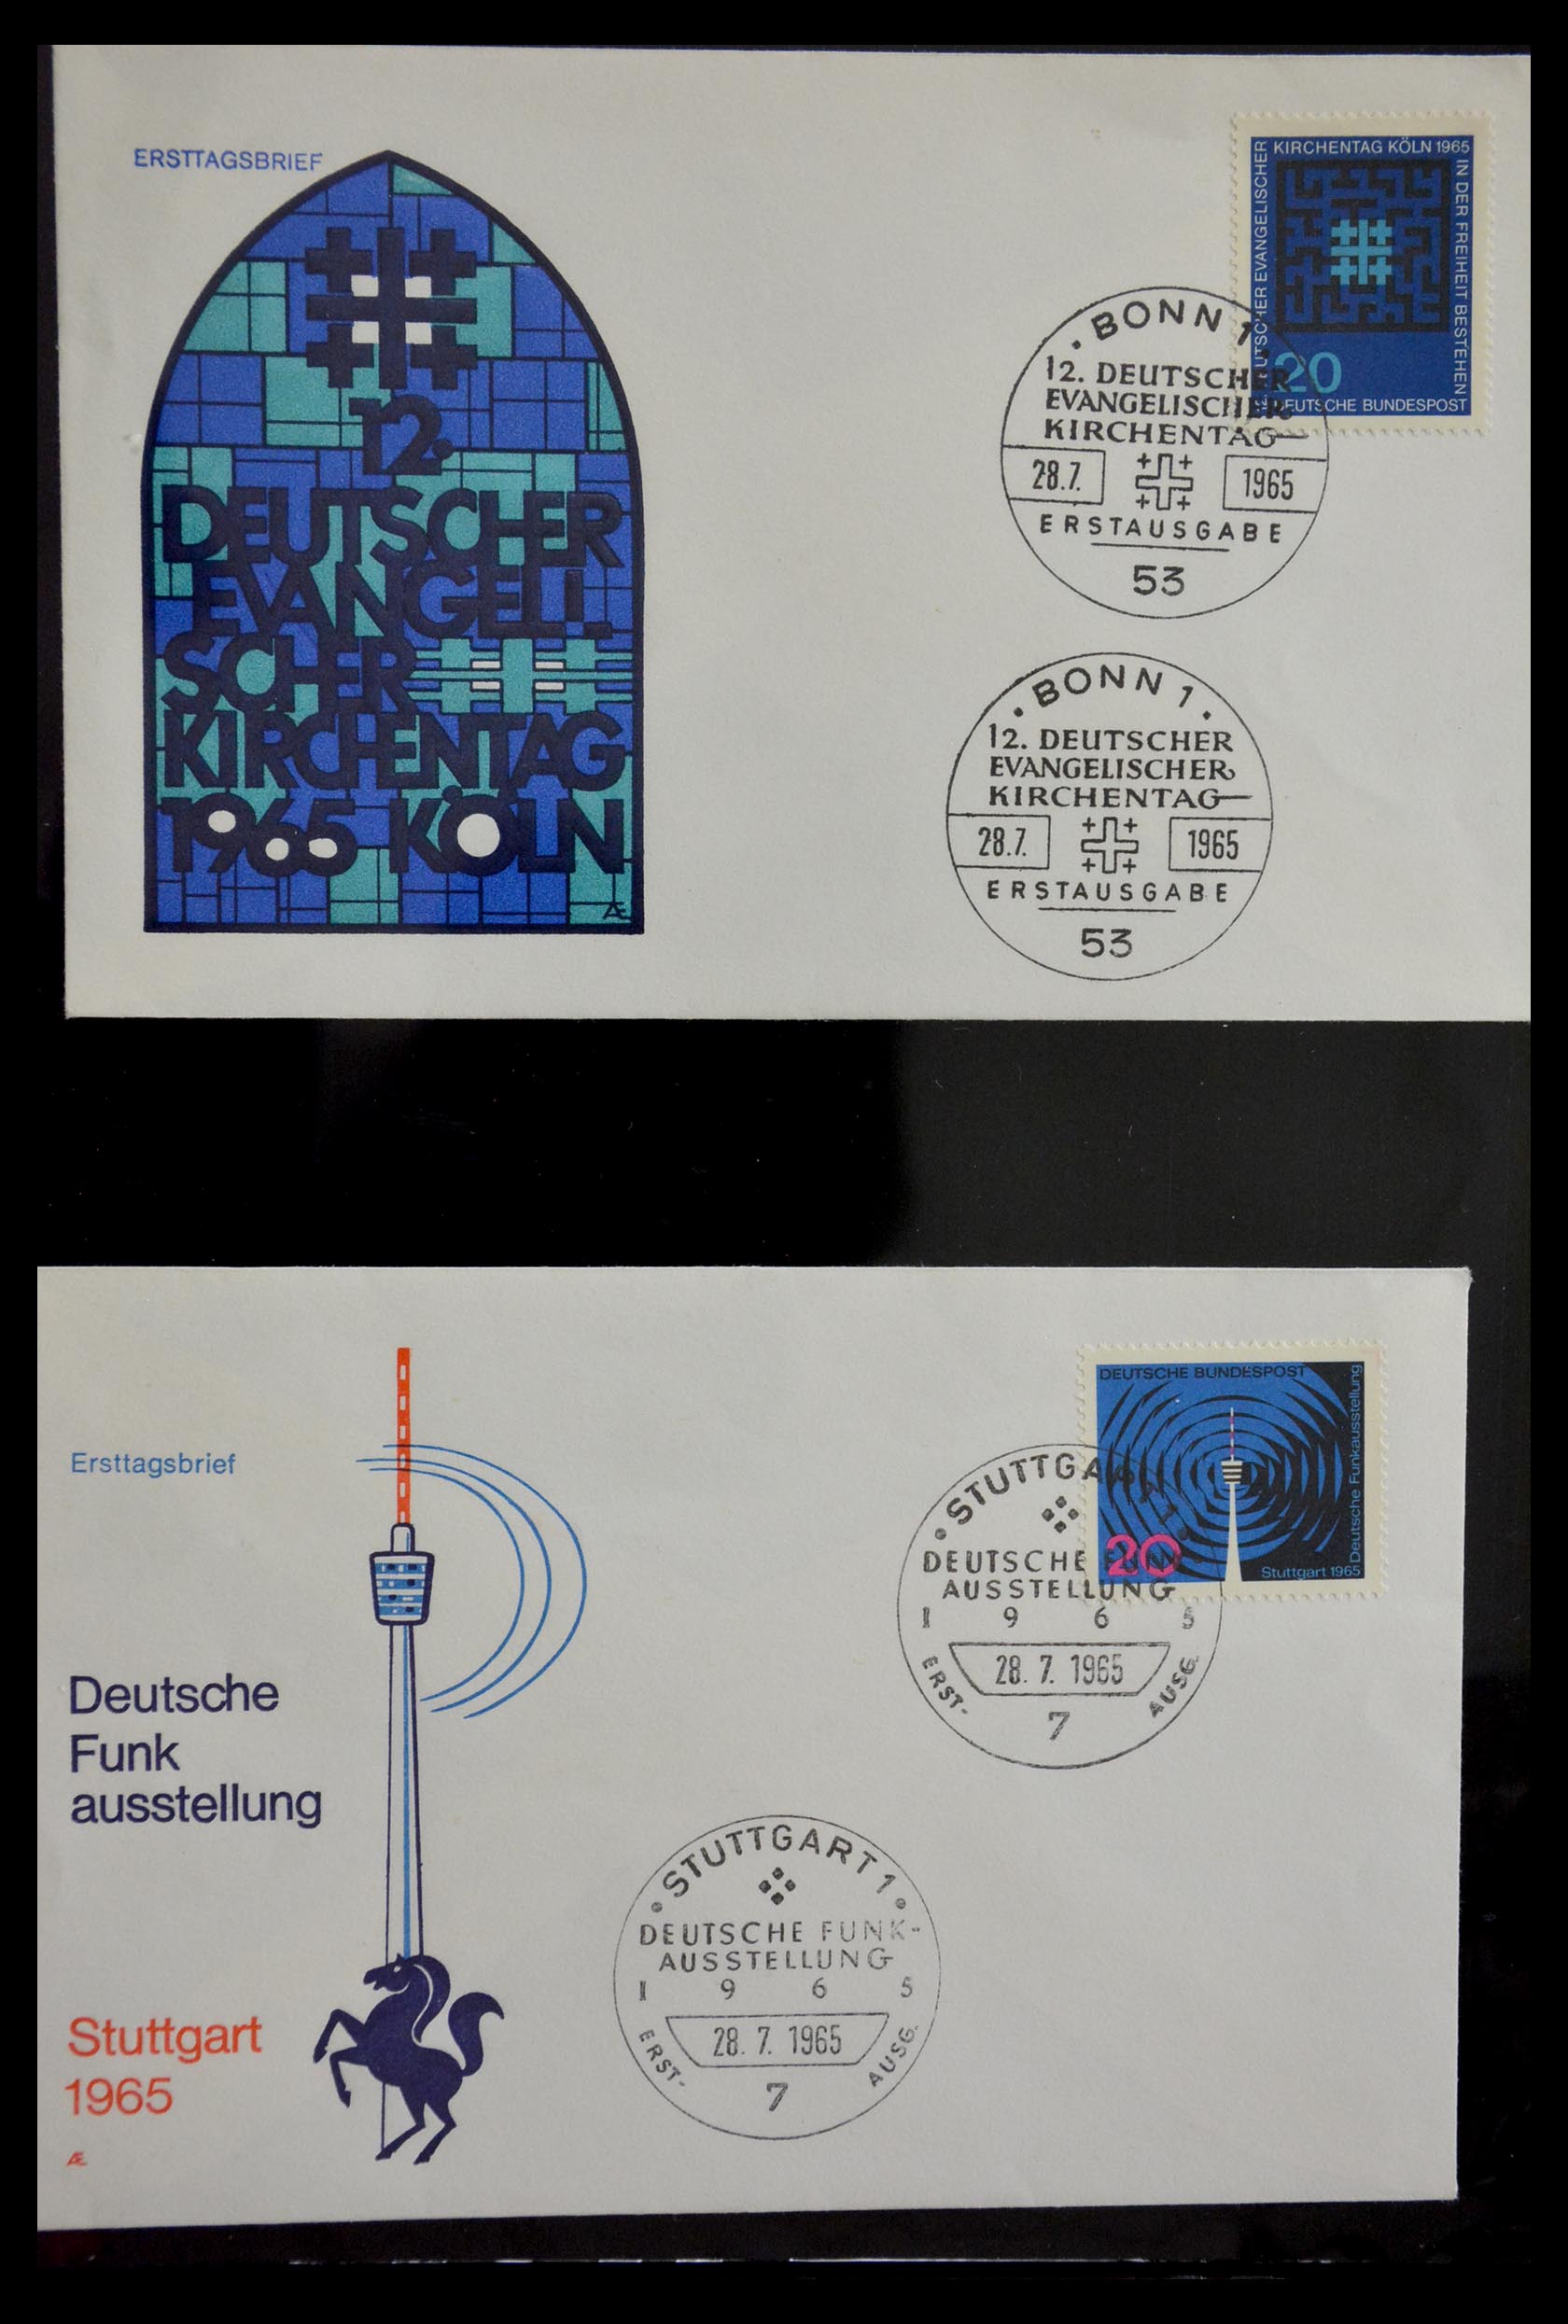 29382 042 - 29382 Duitsland brieven en FDC's 1936-1965.